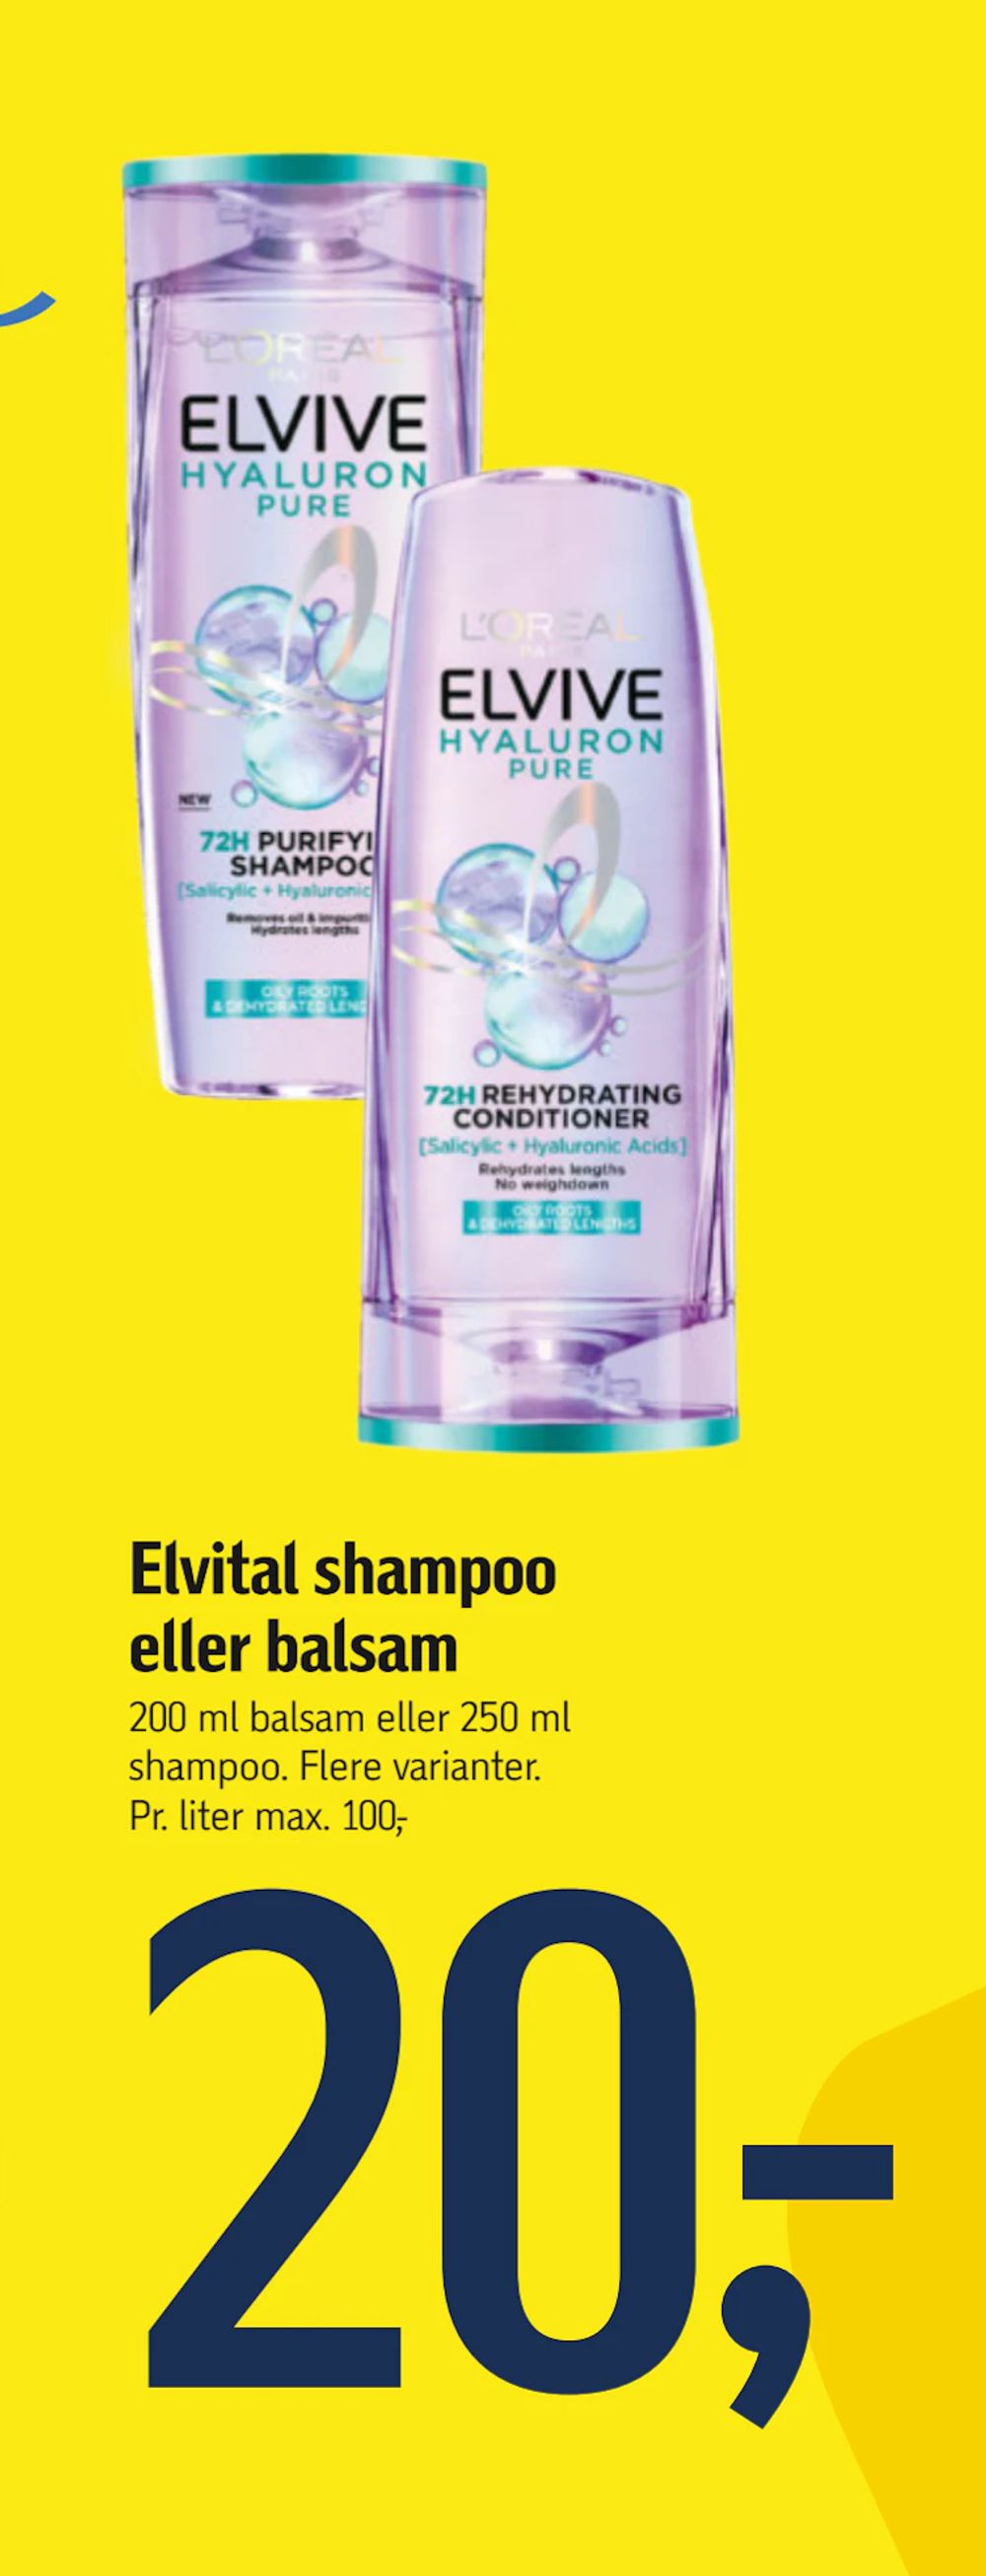 Tilbud på Elvital shampoo eller balsam fra føtex til 20 kr.